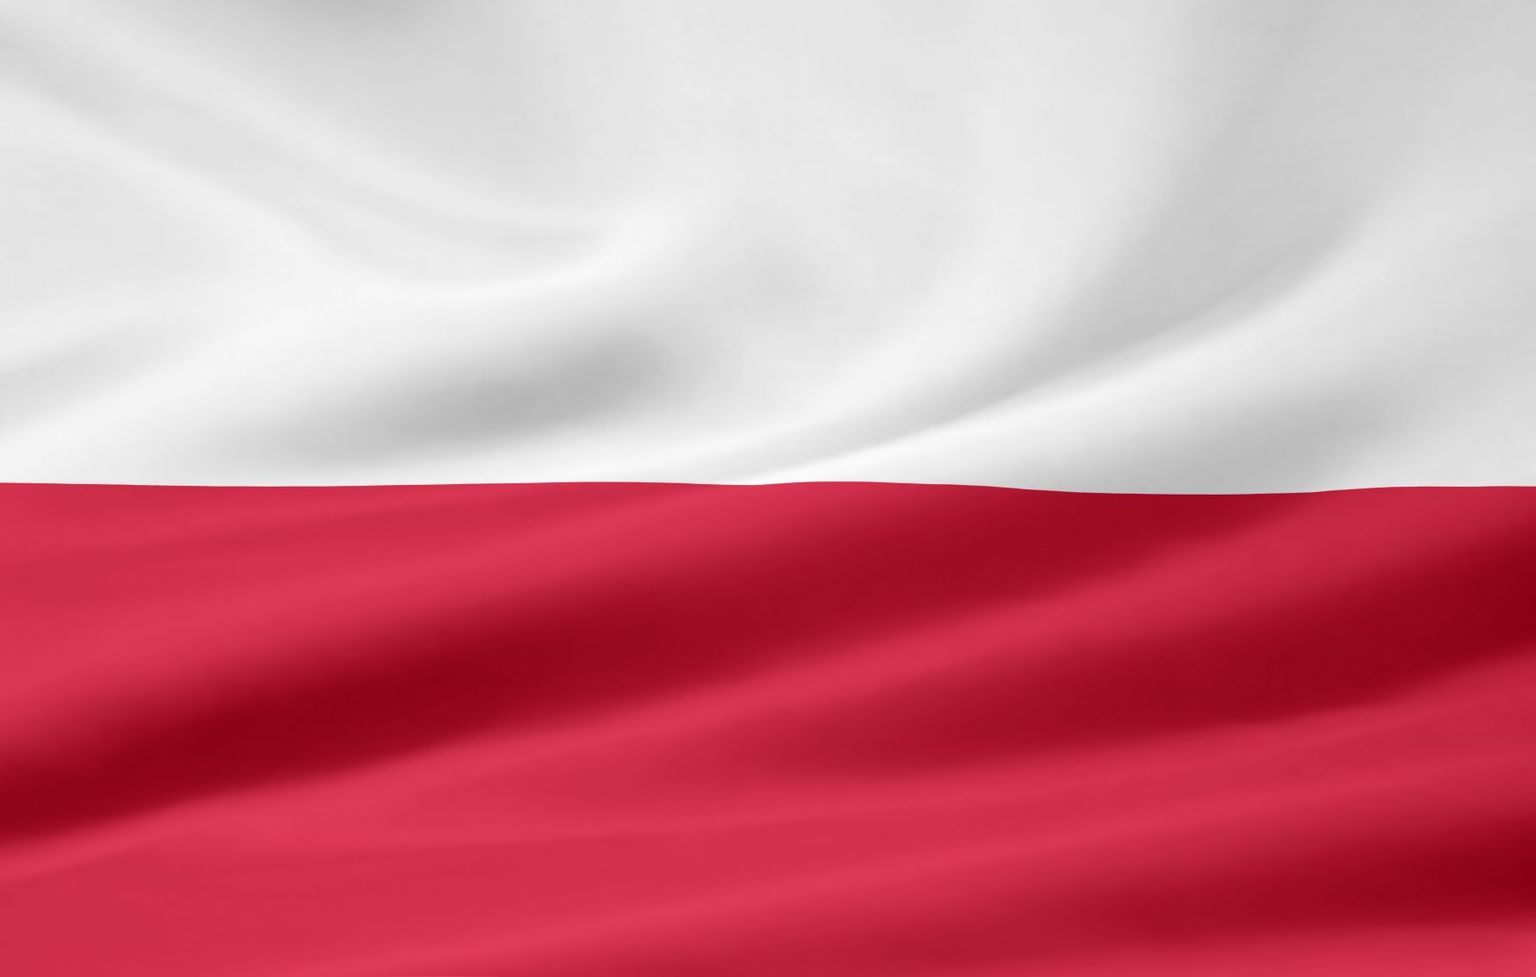 Флаг Польши. Иллюстративное фото.